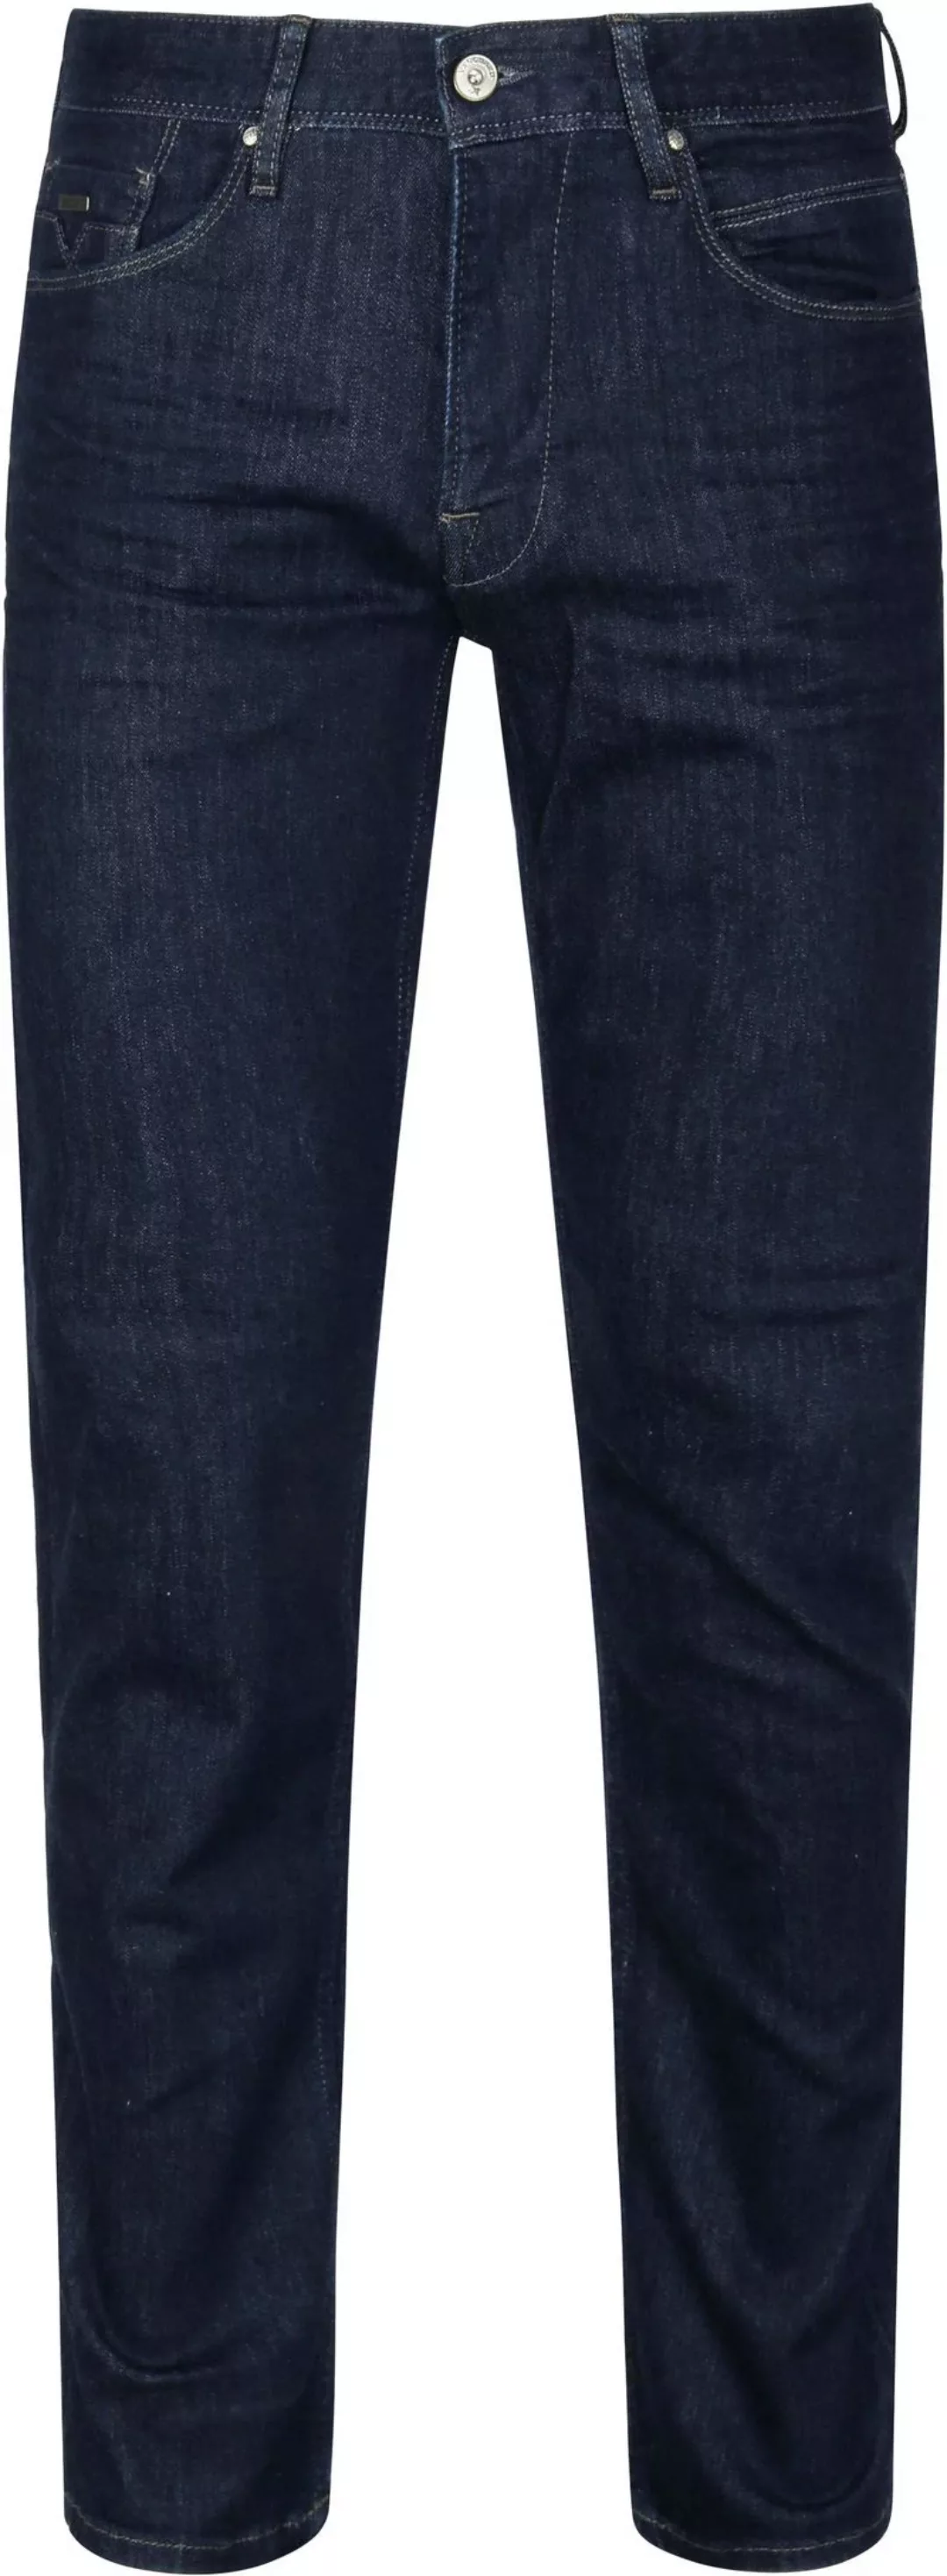 Vanguard Jeans V7 Rider Dunkelblau - Größe W 36 - L 36 günstig online kaufen